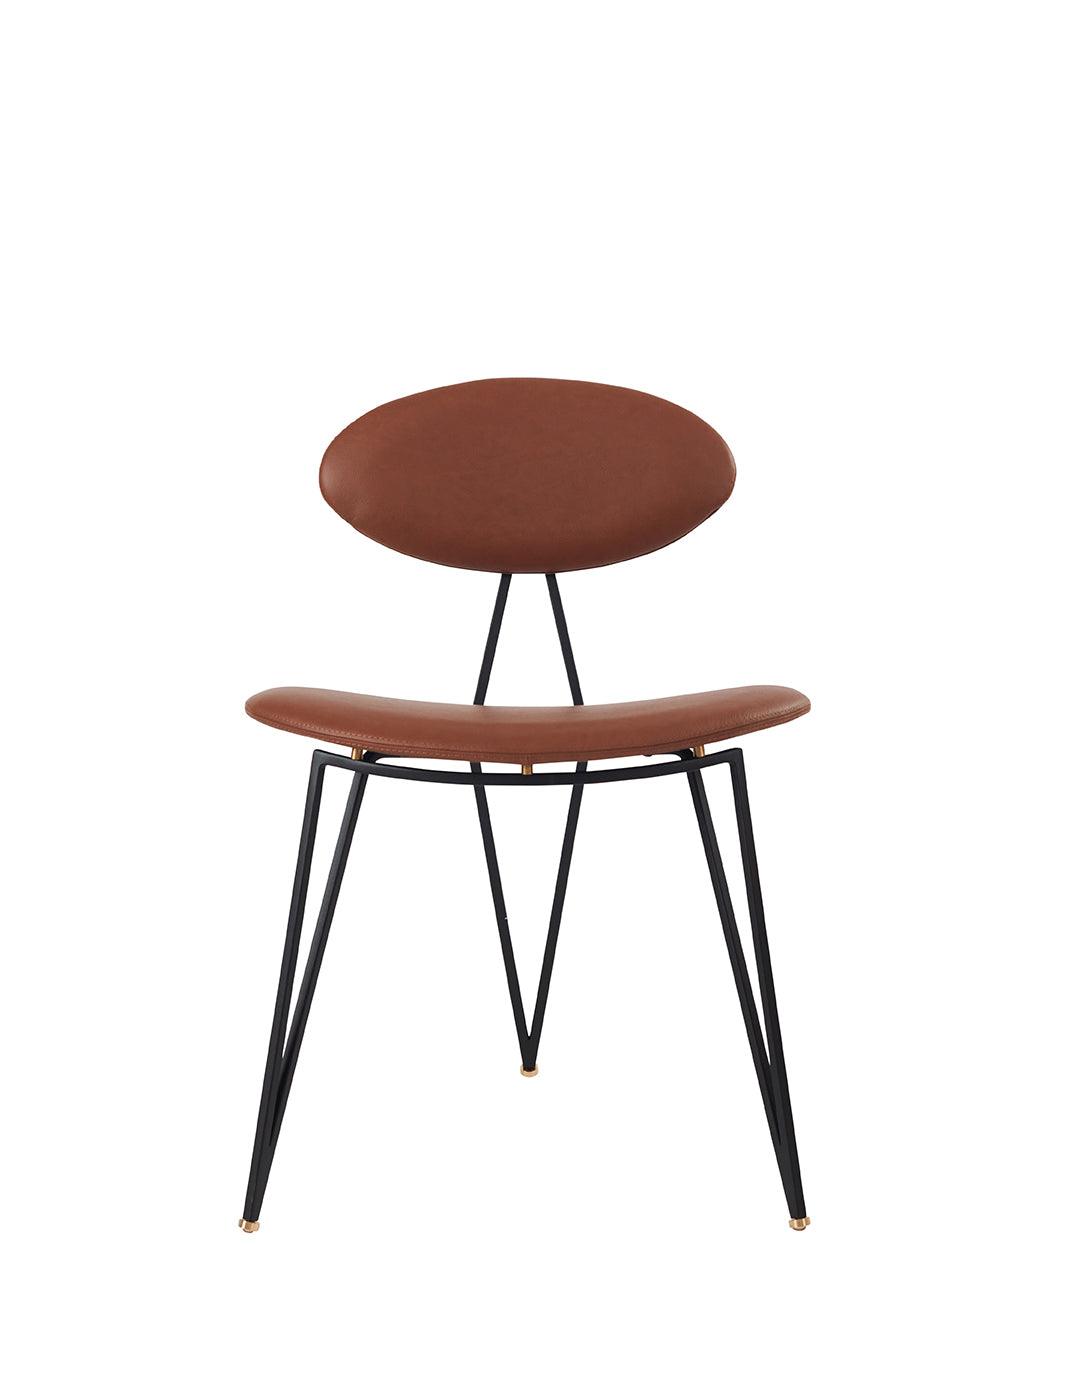 SEMPER scaun dining negru / cognac CAMO SIK 1003, L56,5xW50xH80 CM, AYTM - PARIS14A.RO